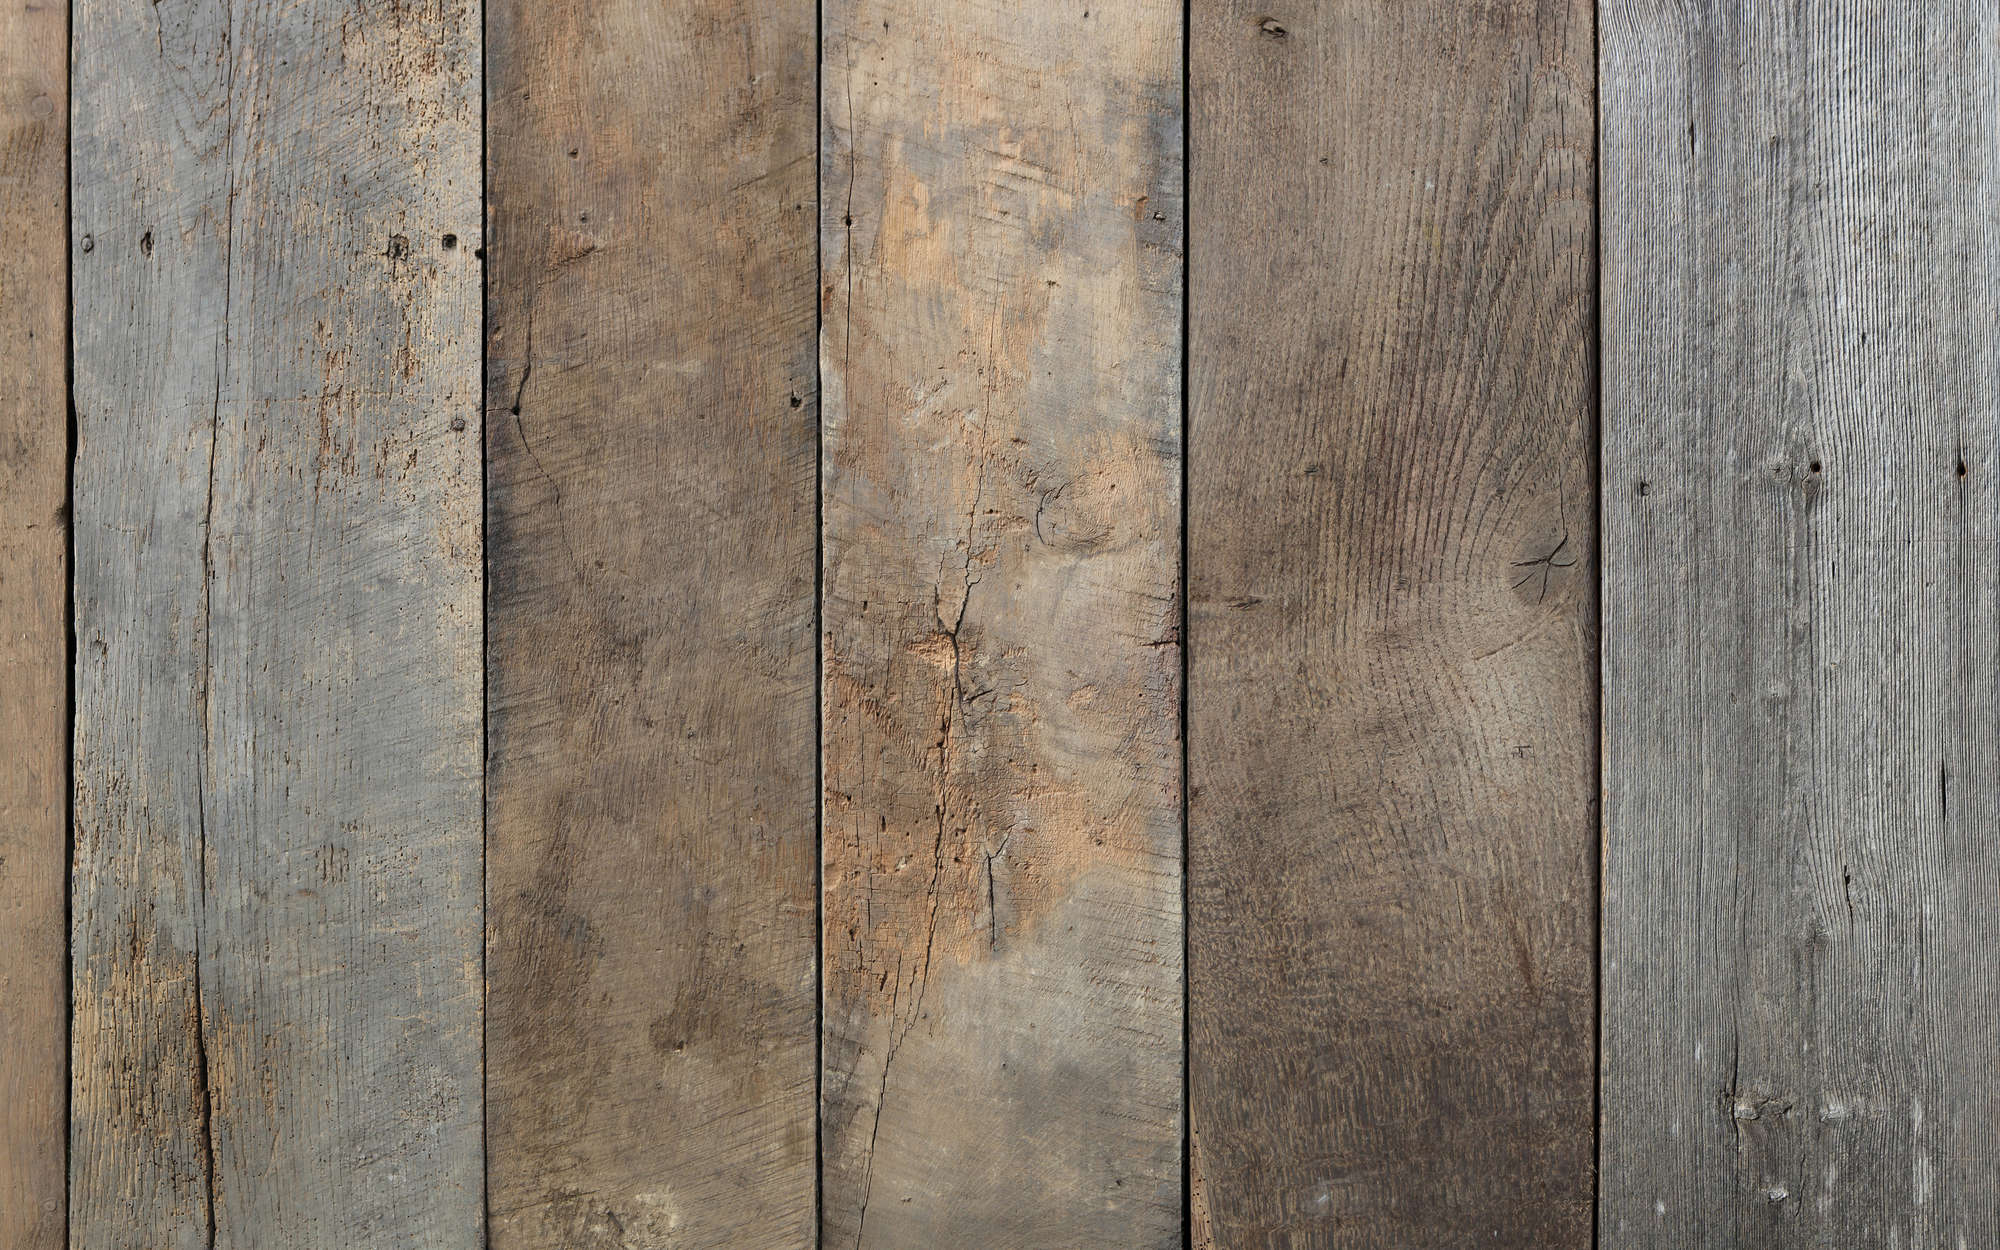             Fototapete alte Holzdielen – Strukturiertes Vlies
        